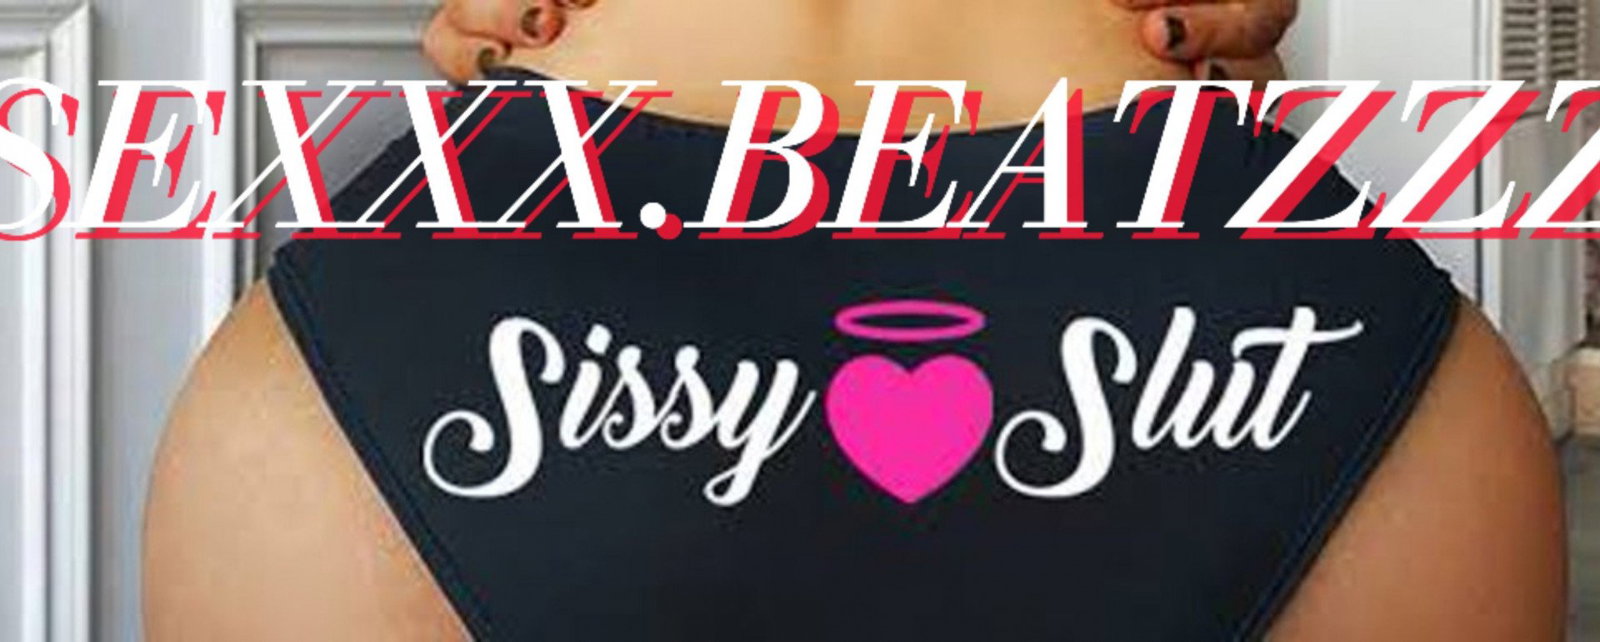 Cover photo of sexxxbeatzzz